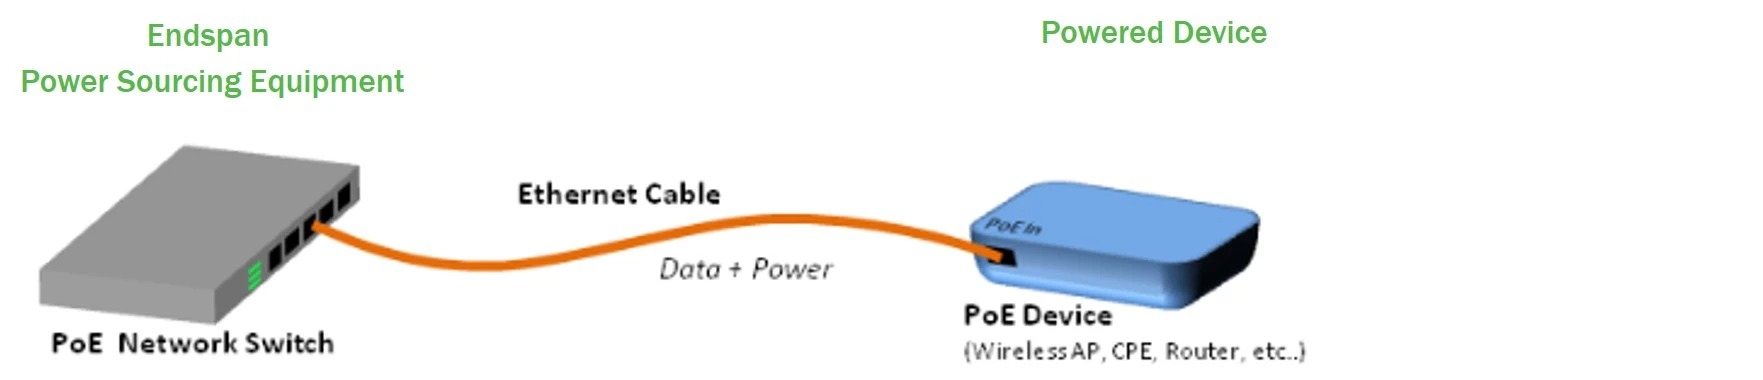 通过以太网供电(PoE)技术为智能建筑供电